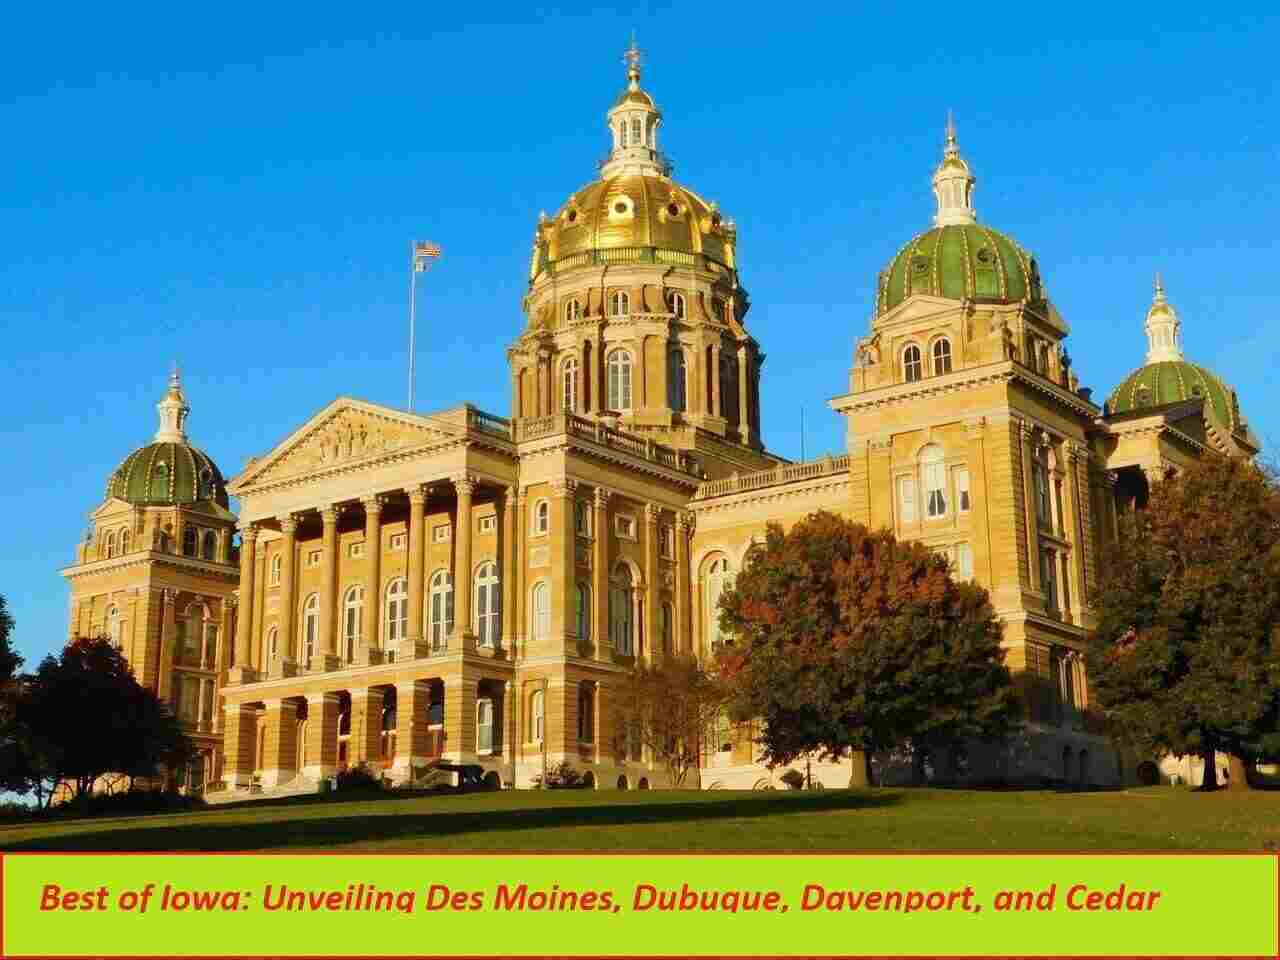 Best of Iowa Des Moines, Dubuque, Davenport, and Cedar Rapids